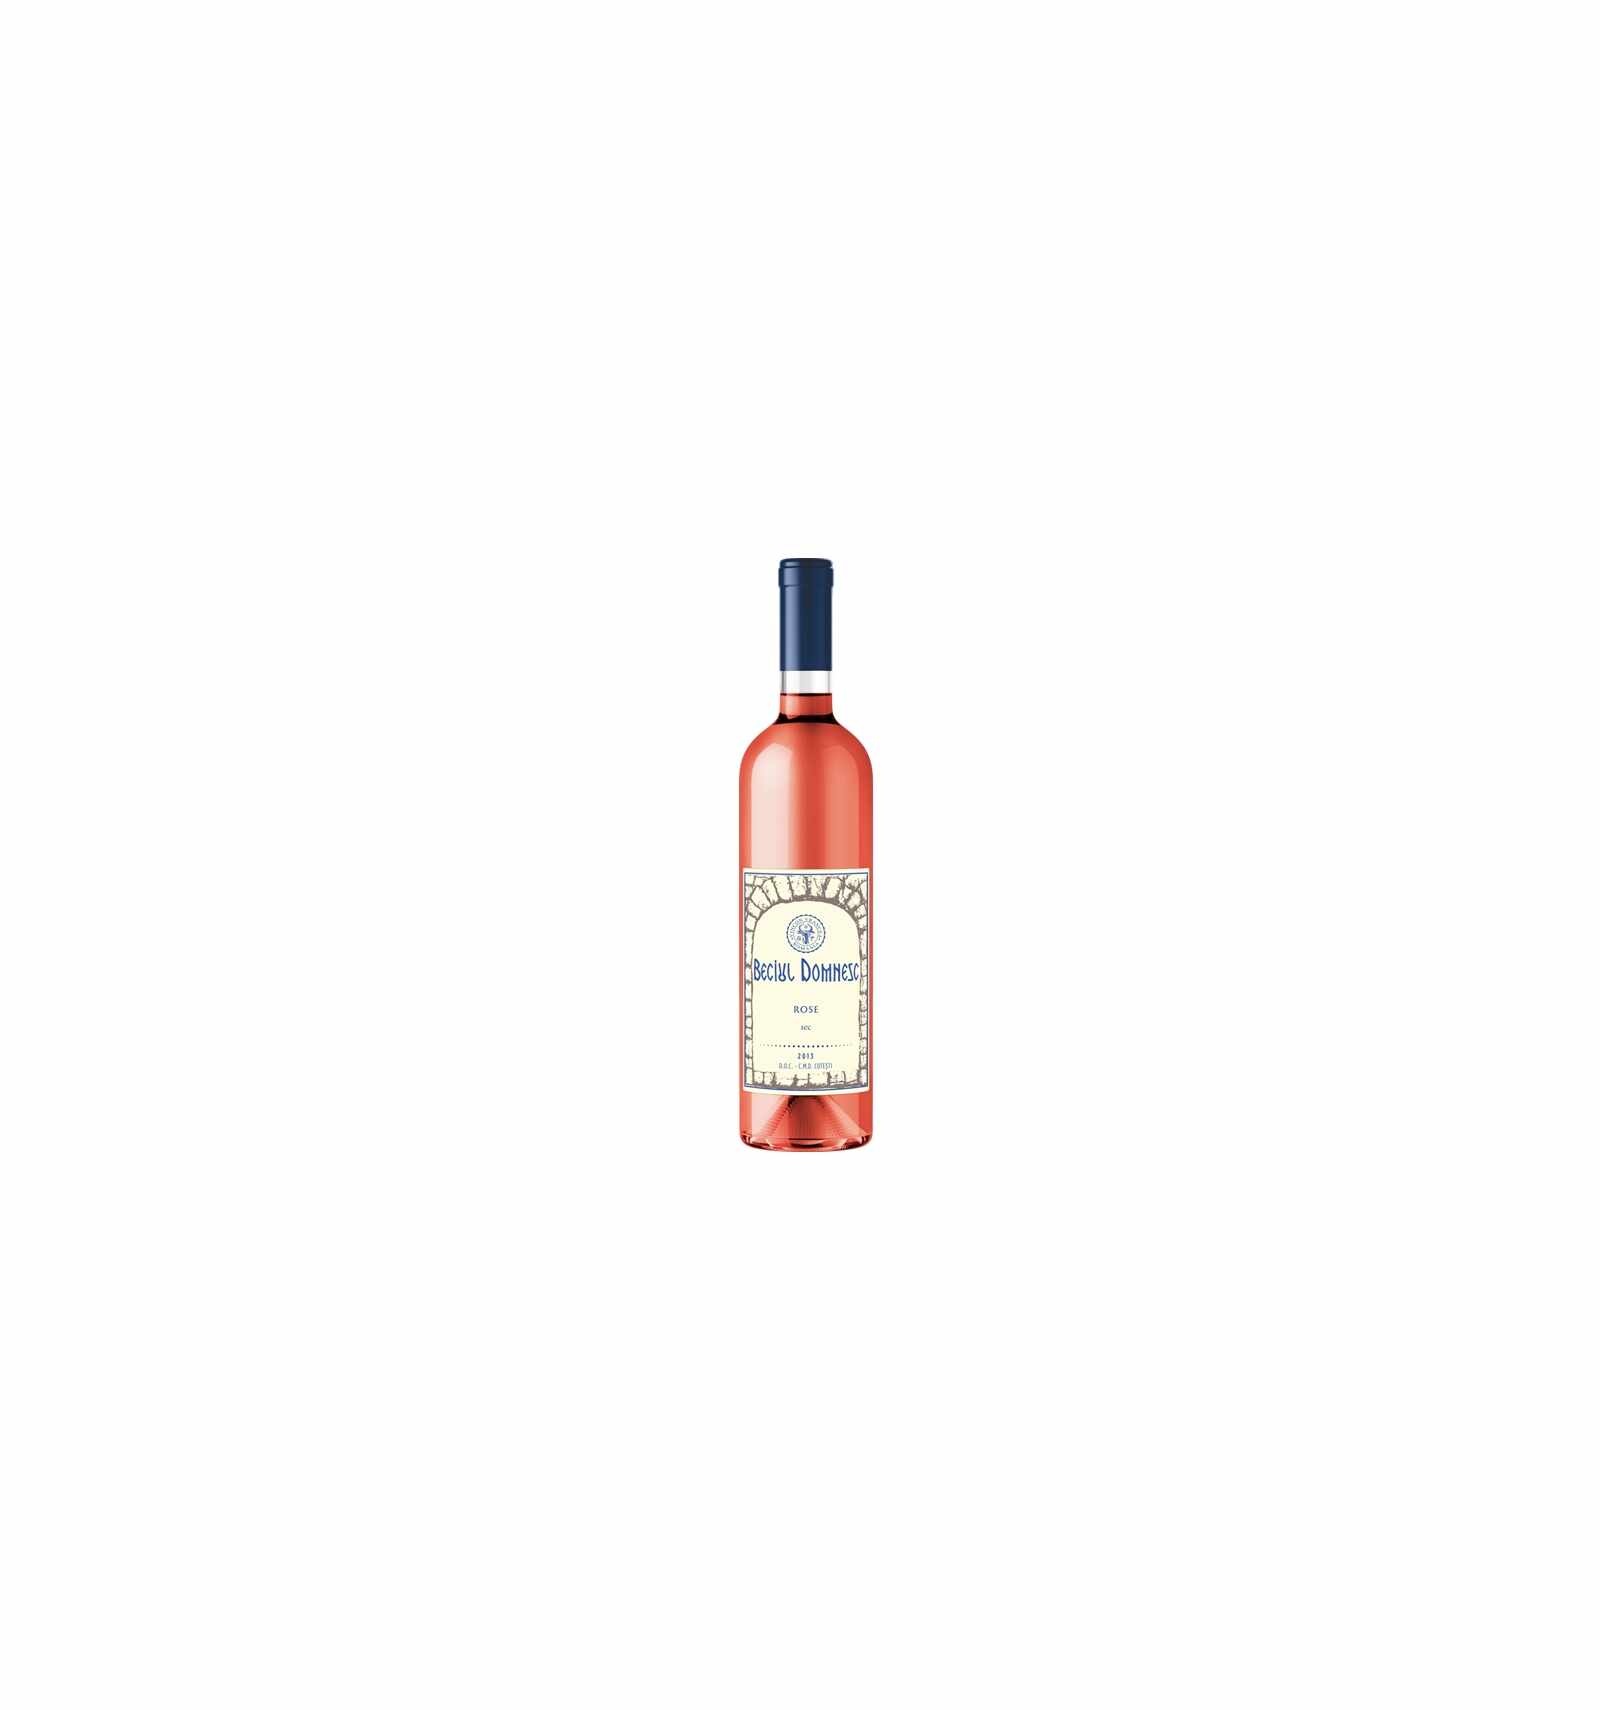 Vin roze sec, Beciul Domnesc Husi, 0.75L, 13% alc., Romania